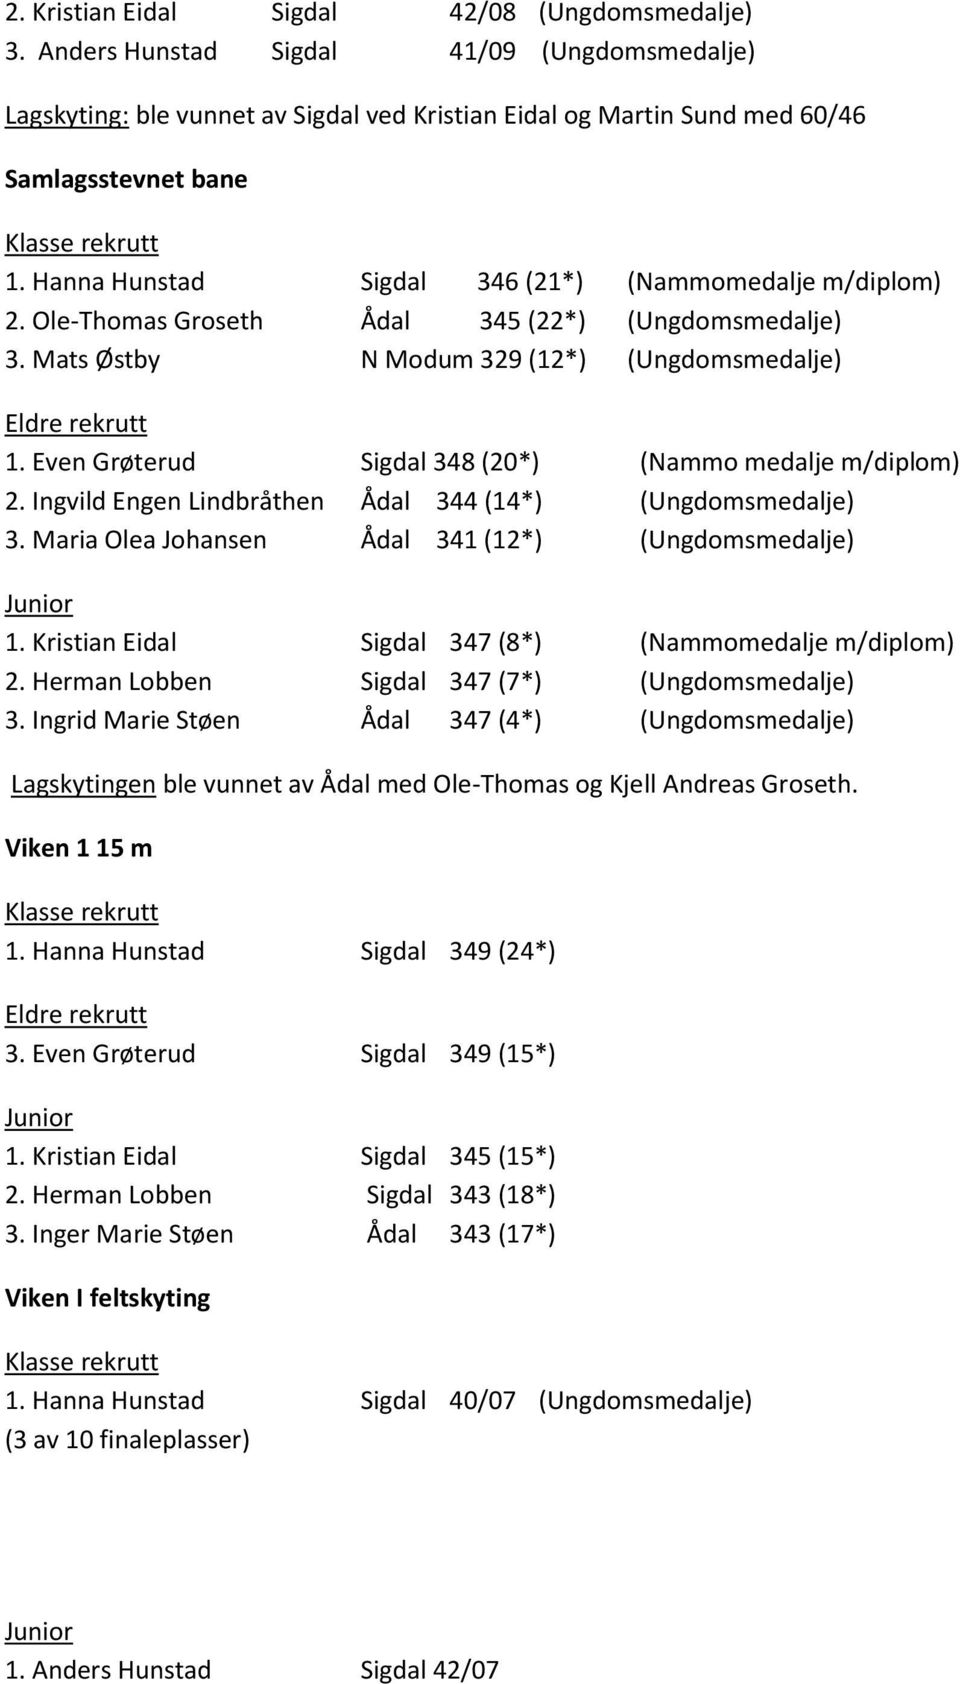 Even Grøterud Sigdal 348 (20*) (Nammo medalje m/diplom) 2. Ingvild Engen Lindbråthen Ådal 344 (14*) (Ungdomsmedalje) 3. Maria Olea Johansen Ådal 341 (12*) (Ungdomsmedalje) 1.